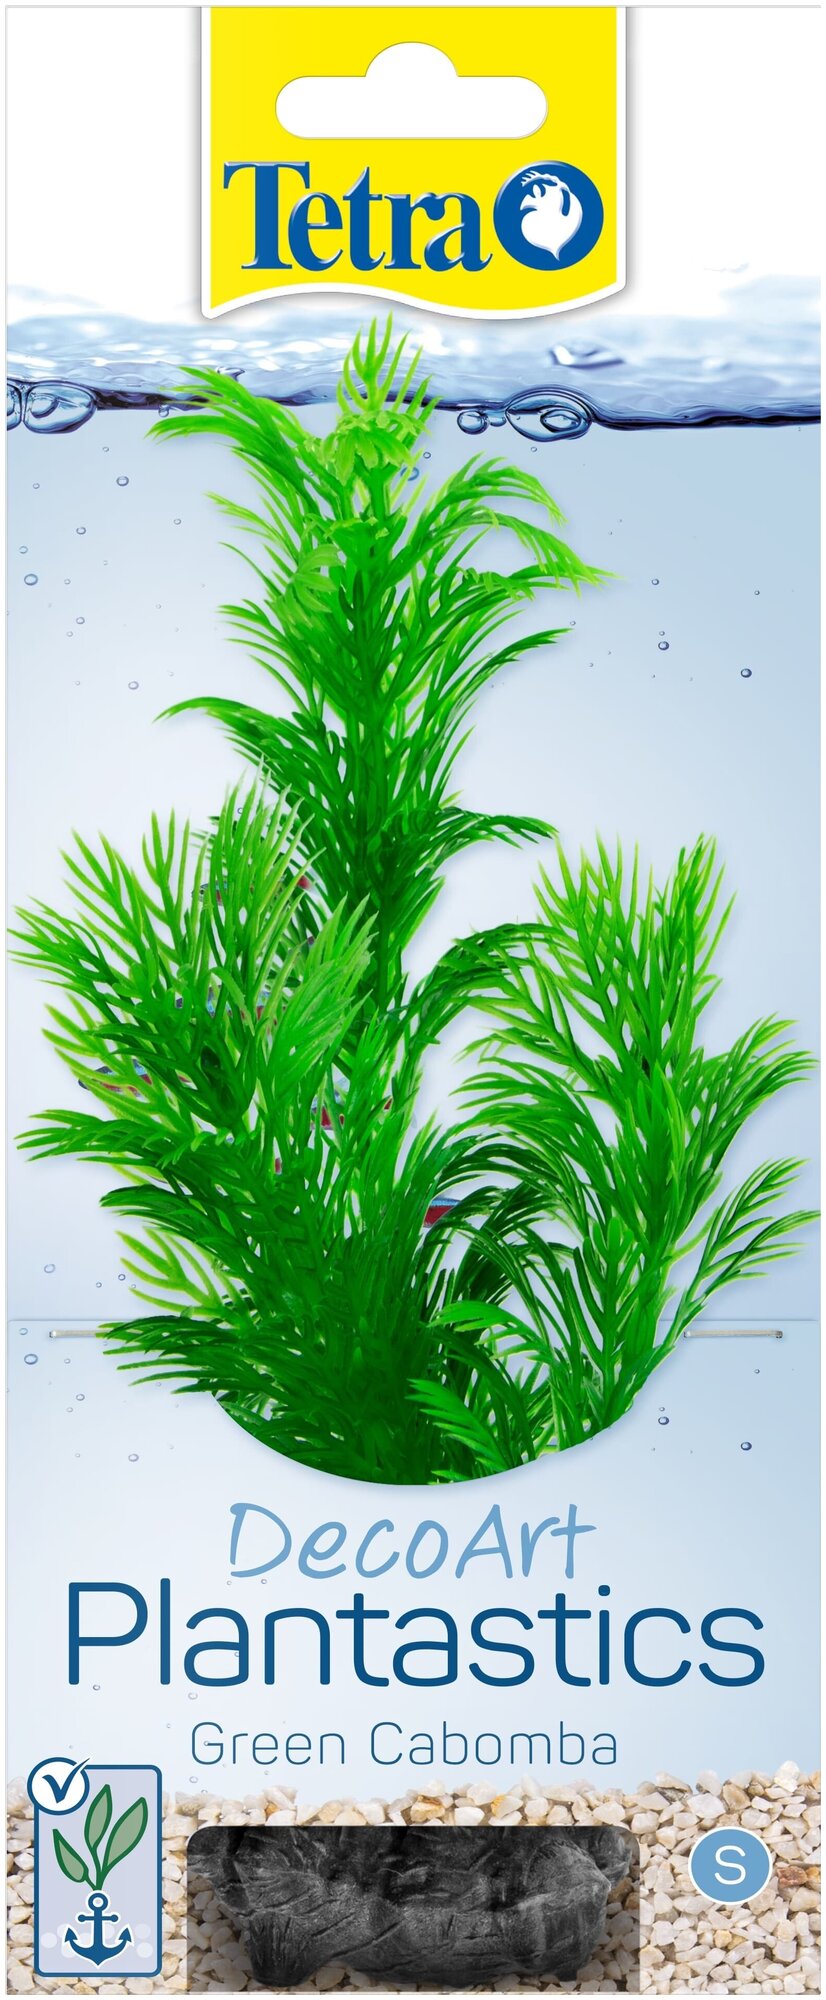 Растение Tetra DecoArt Plantastics Green Cabomba (S) 15 см. с утяжелителем